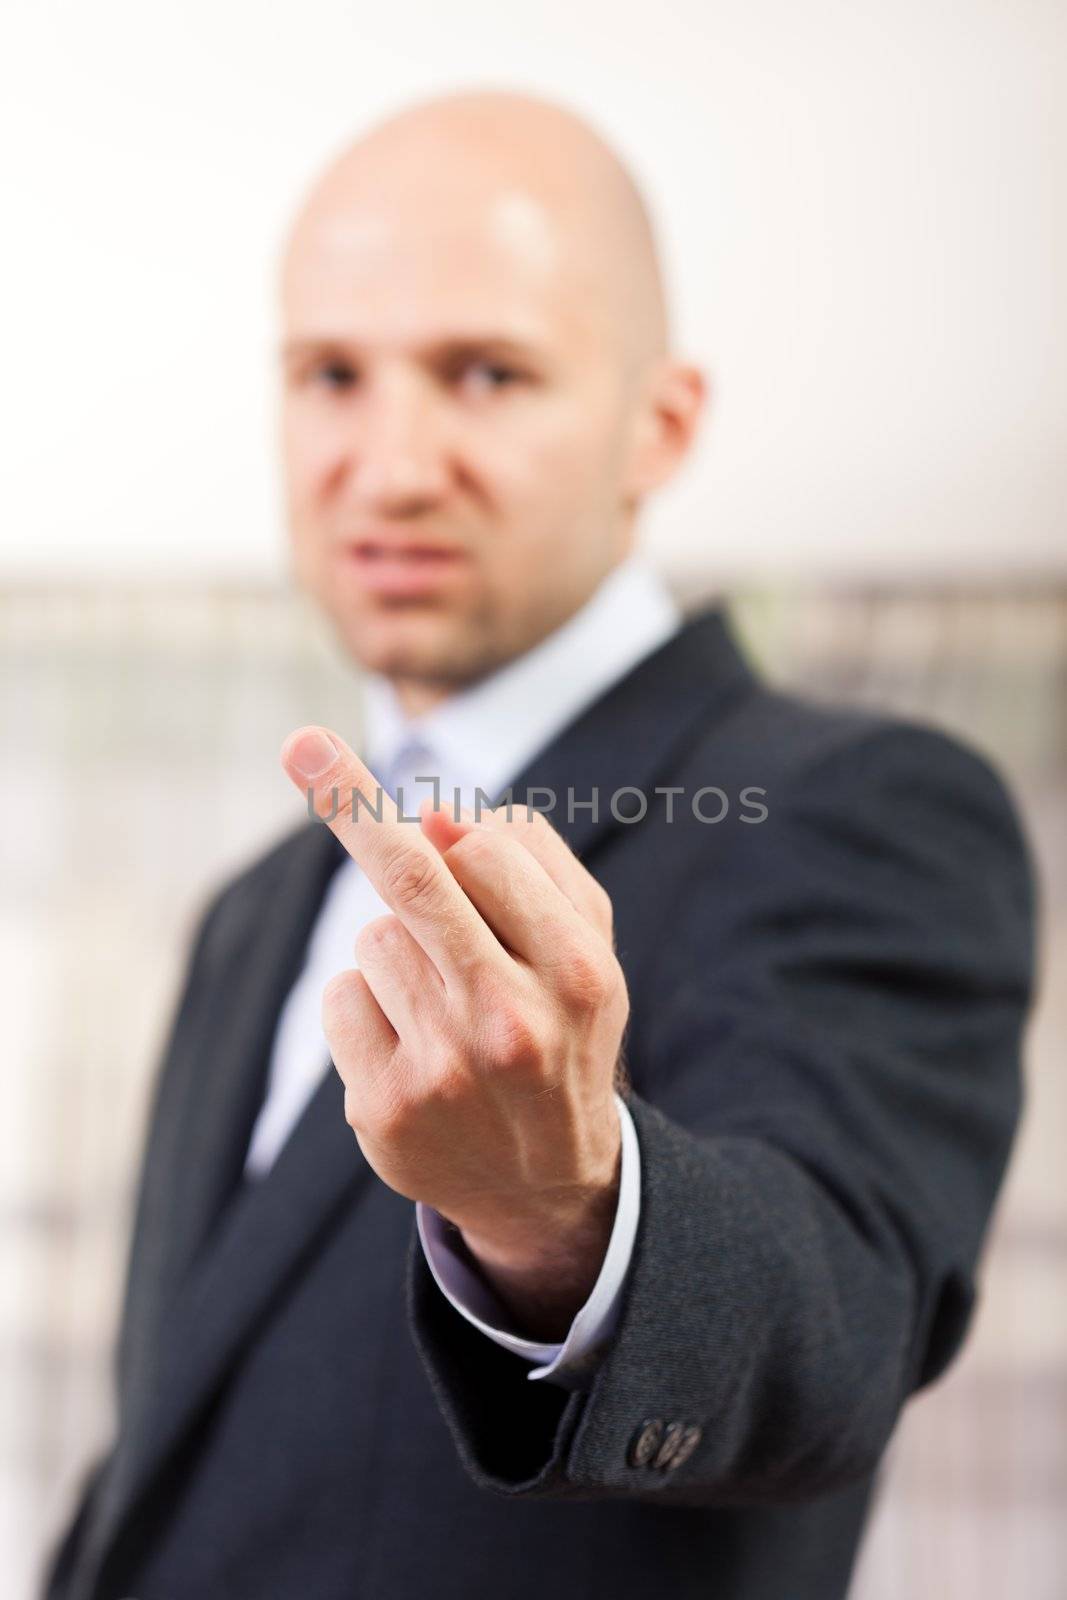 Human men hand gesture middle finger obscene sign